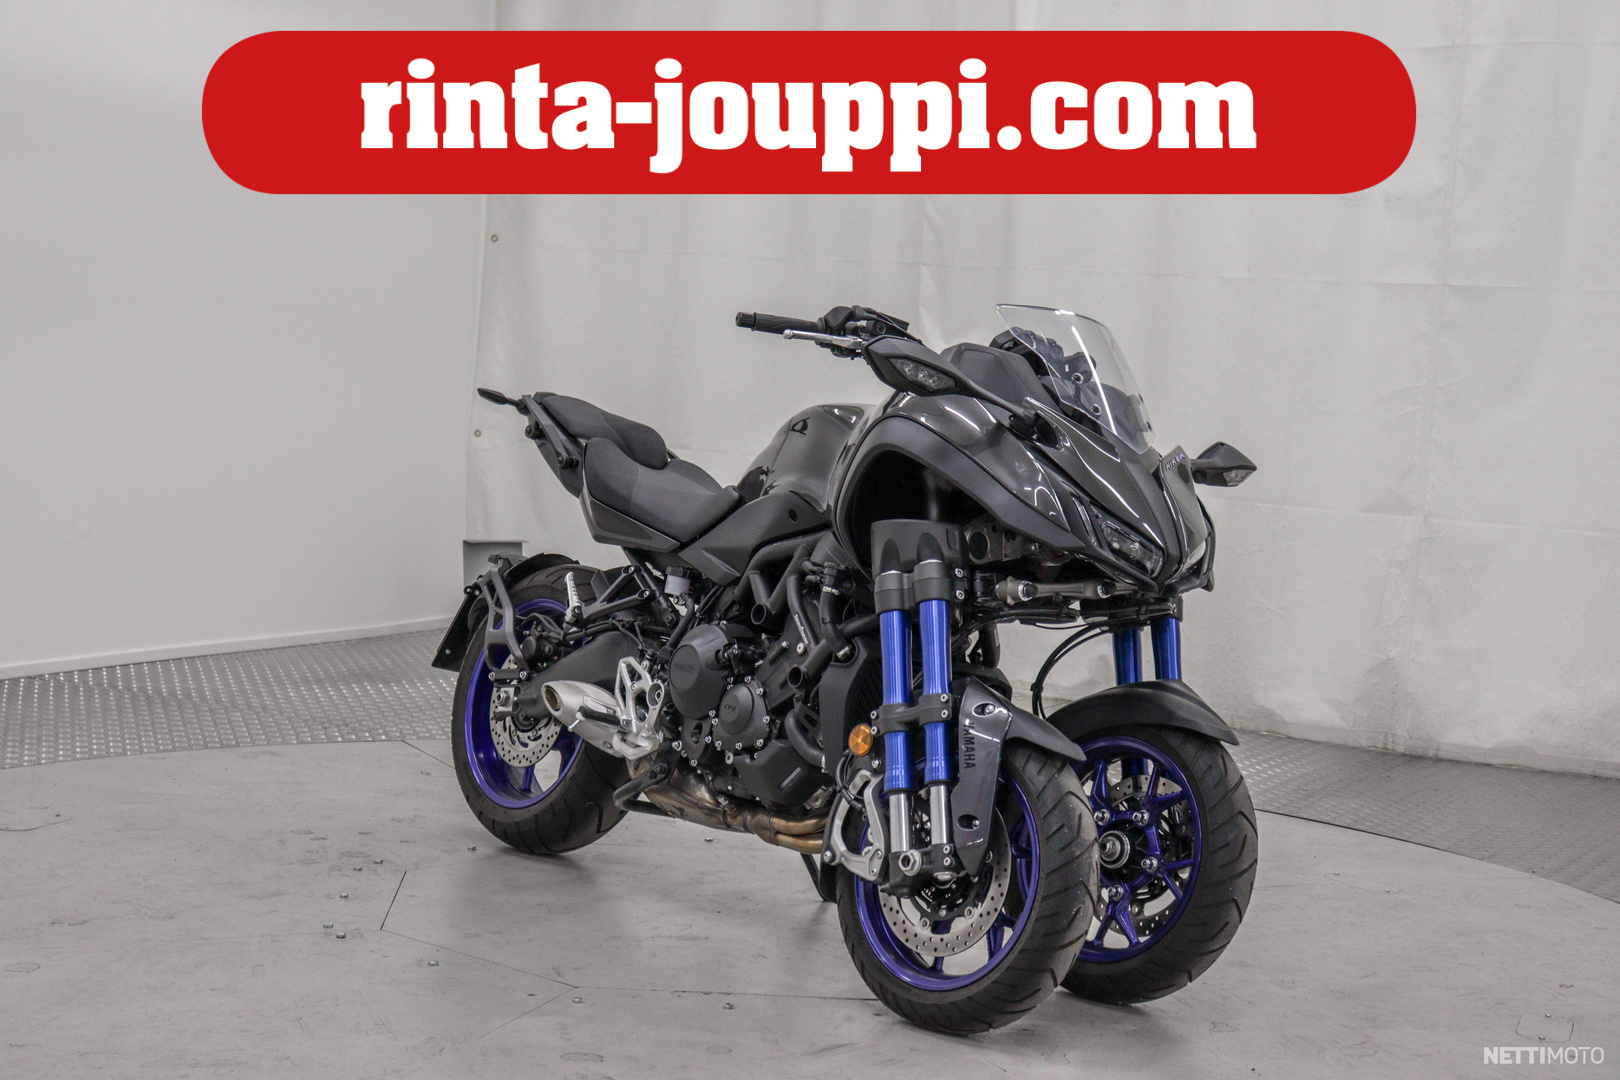 Yamaha NIKEN 850 3,99 %* tähänkin ajoneuvoon! **** Rahoitustarjous 3,99 %* tähän *** 850 cm³ 2019 - Vantaa - Motorcycle Nettimoto